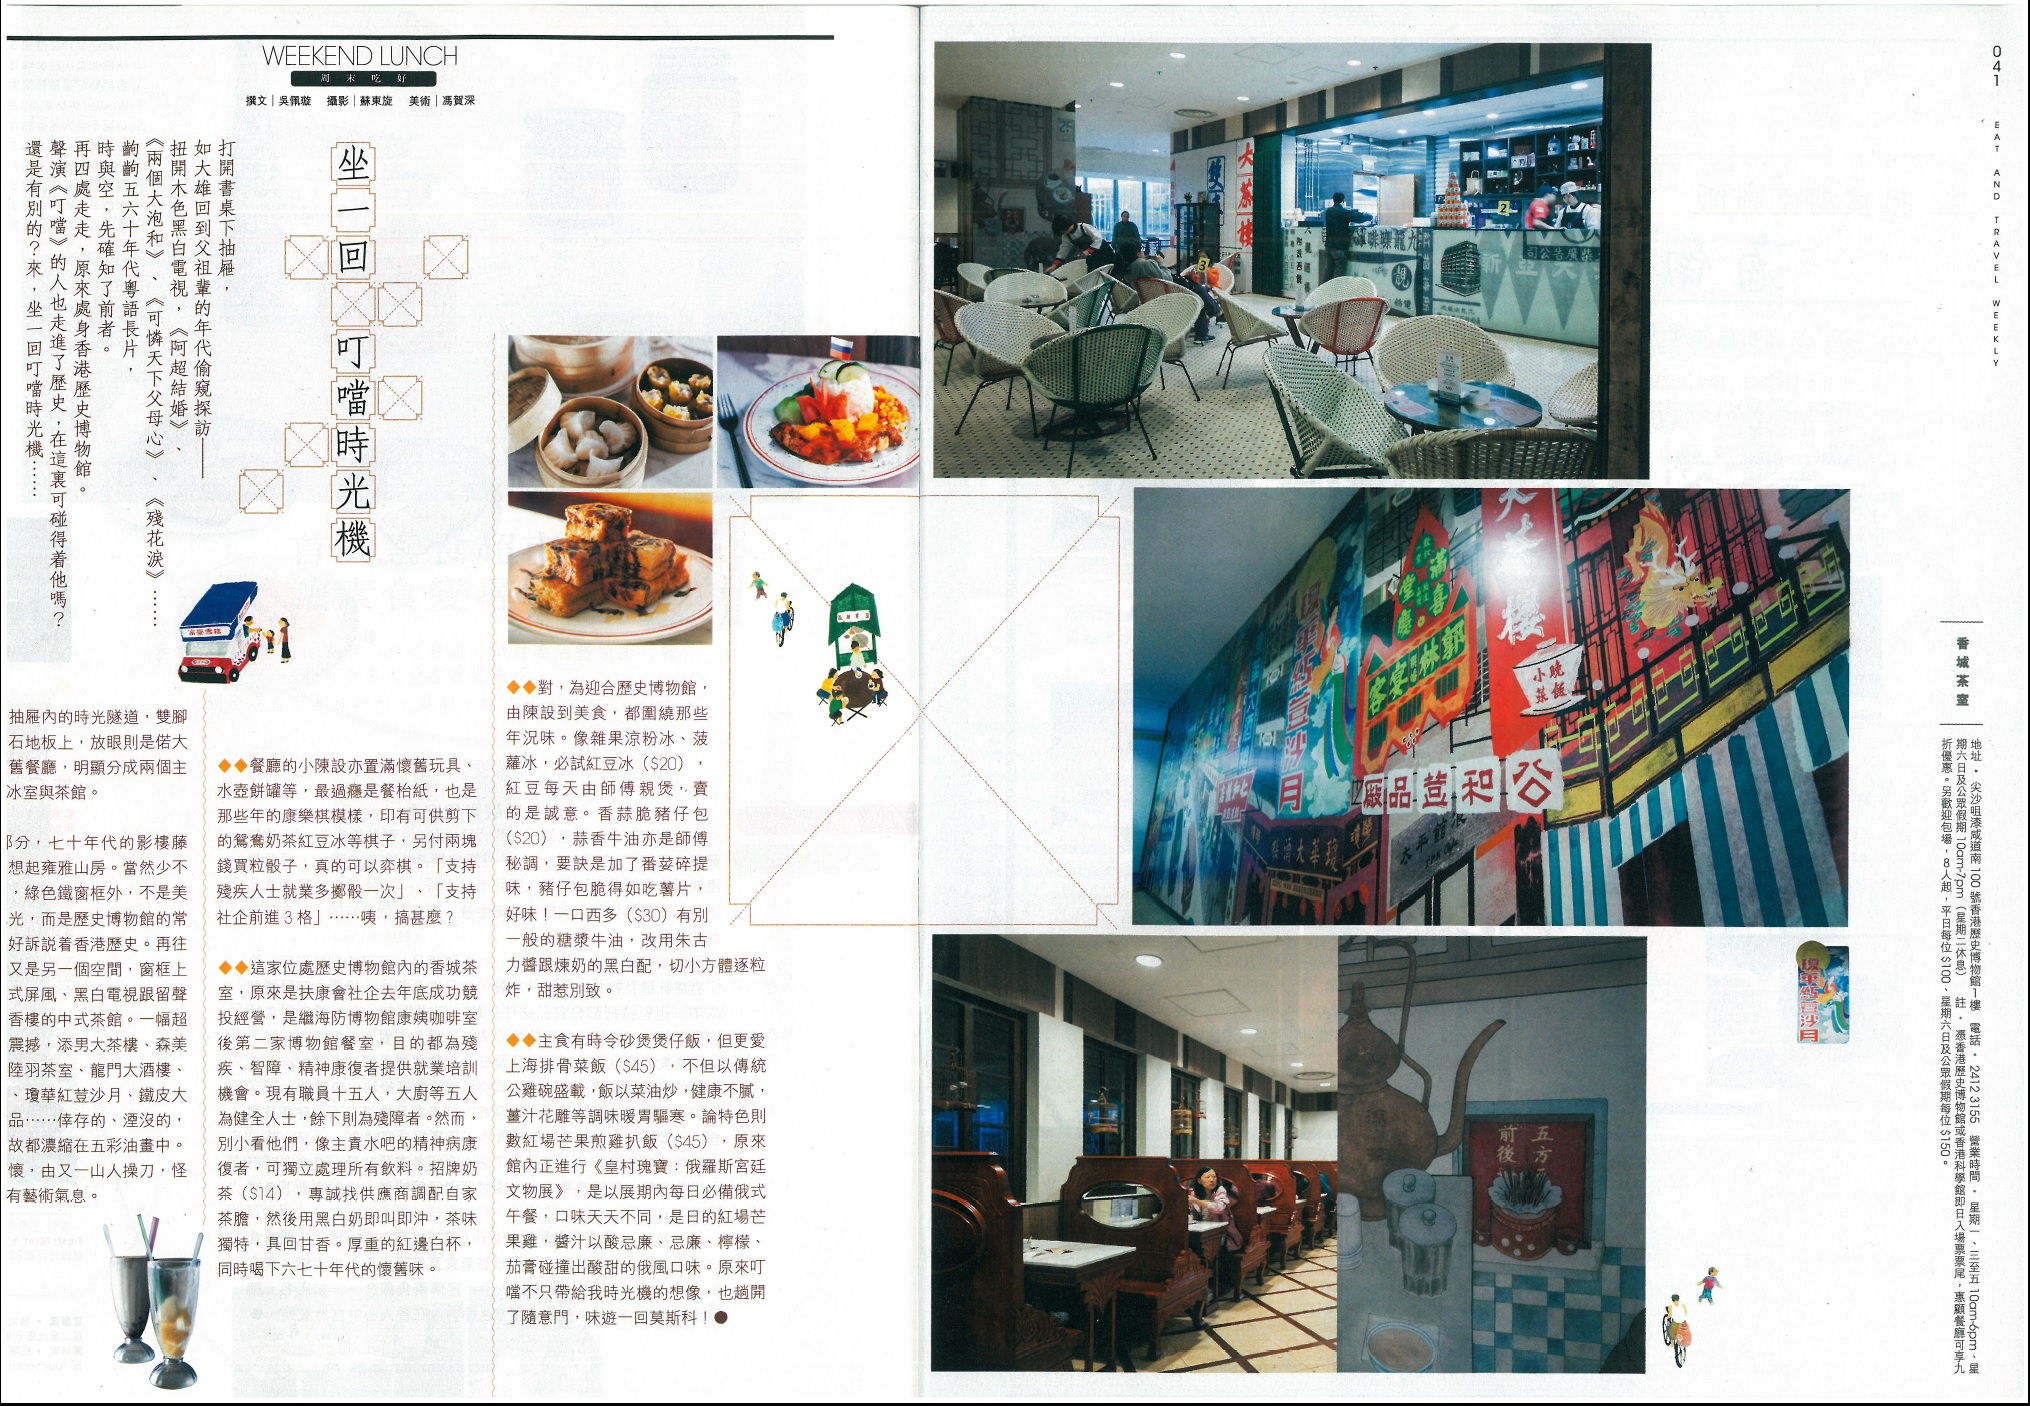 社企餐廳 - 香城茶室 (2015年2月20日)-由飲食男女報道